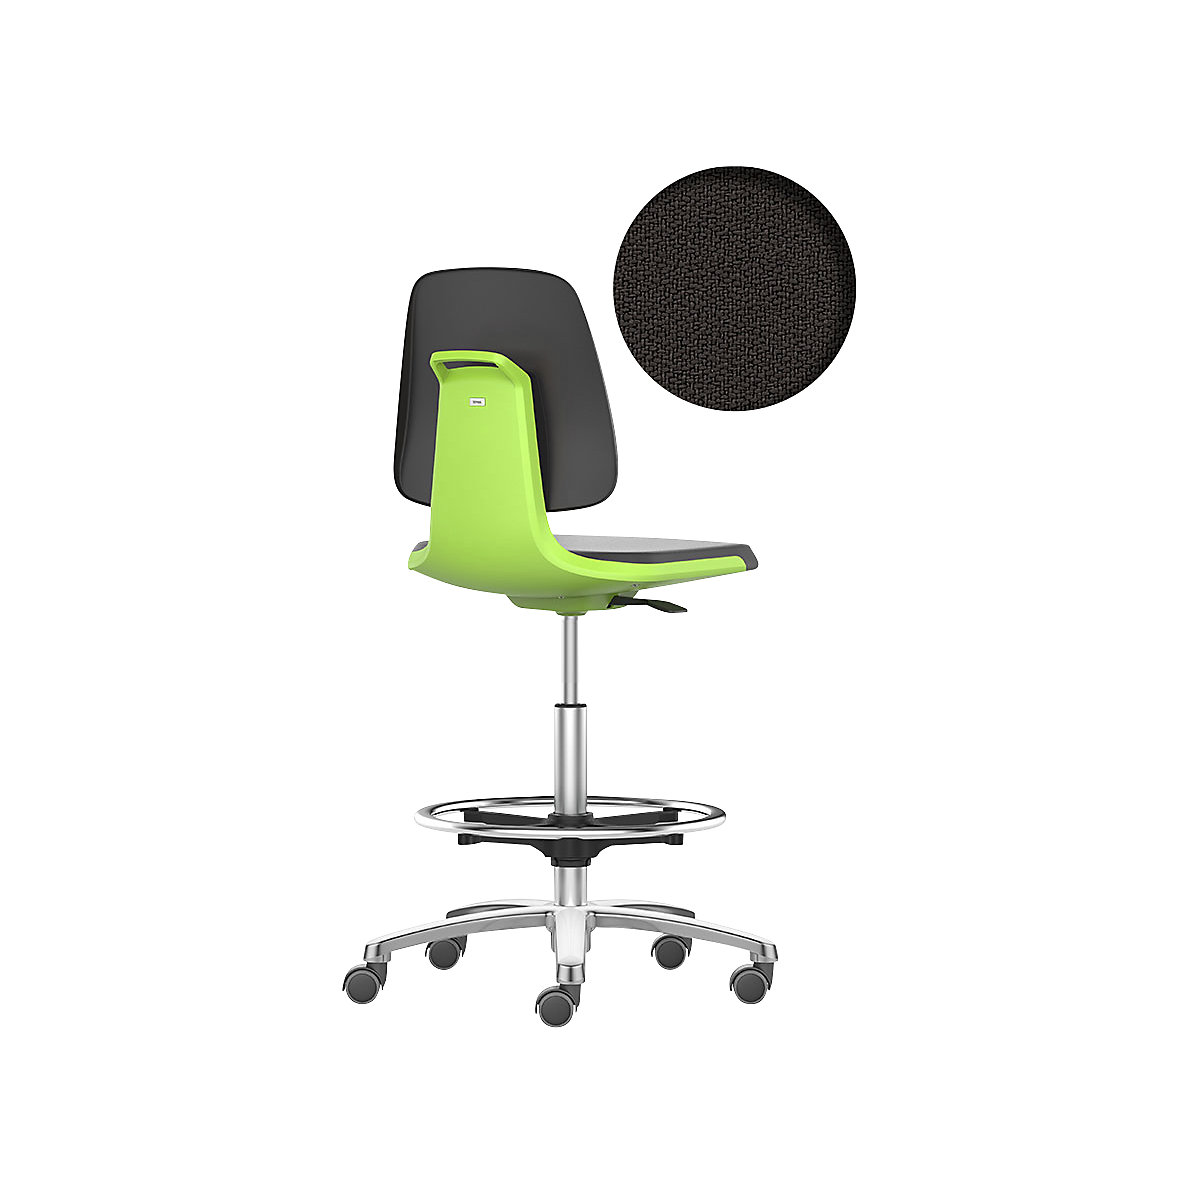 bimos – Siège d'atelier LABSIT, siège haut avec roulettes blocables et repose-pieds circulaire, assise à habillage tissu, vert